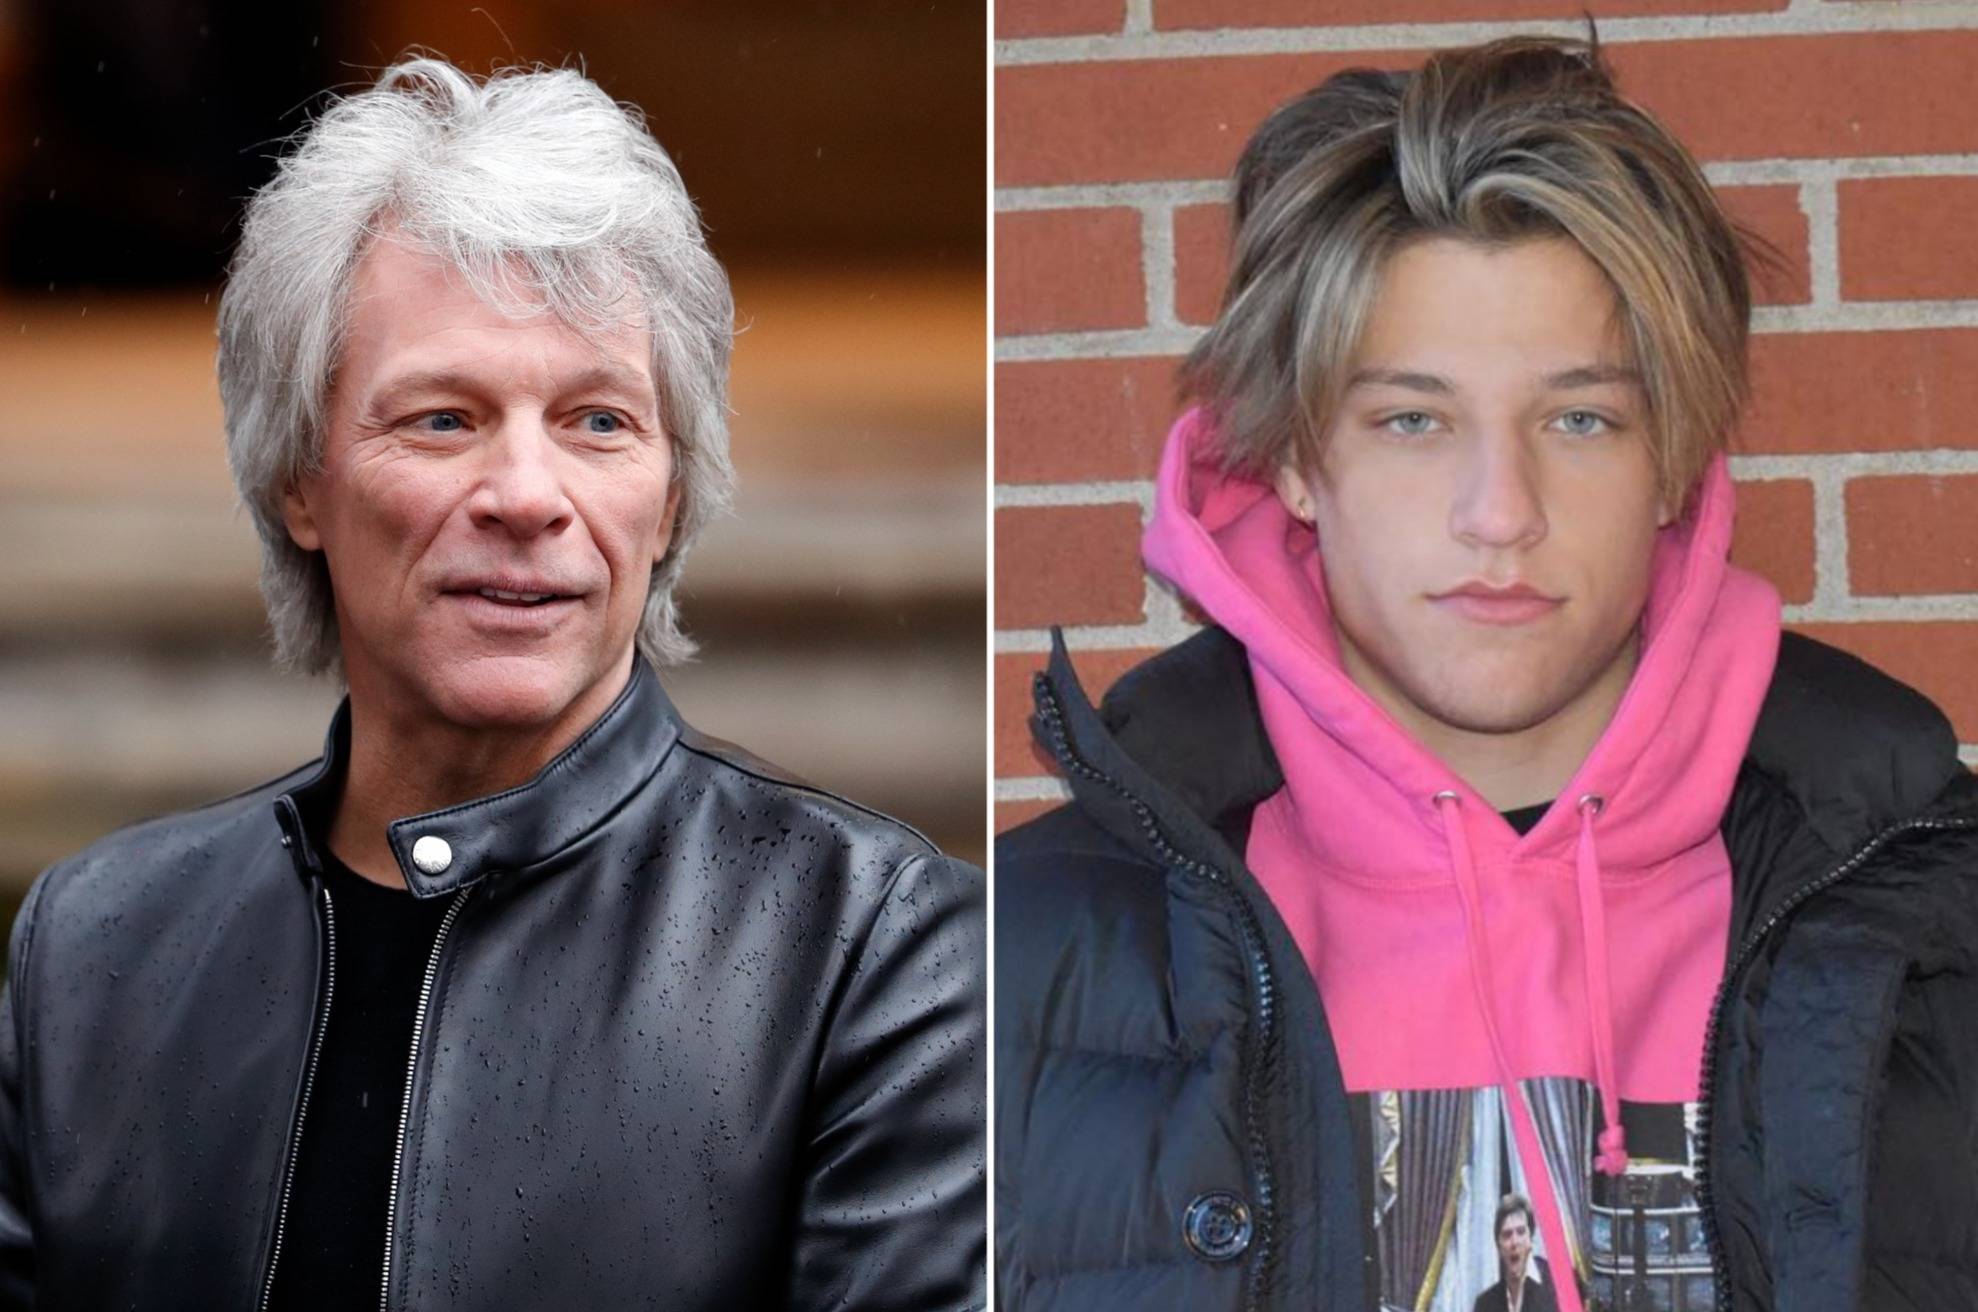 Fiul lui Bon Jovi a fost infectat cu noul virus. Priviți ce  a declarat artistul  despre această întâmplare!